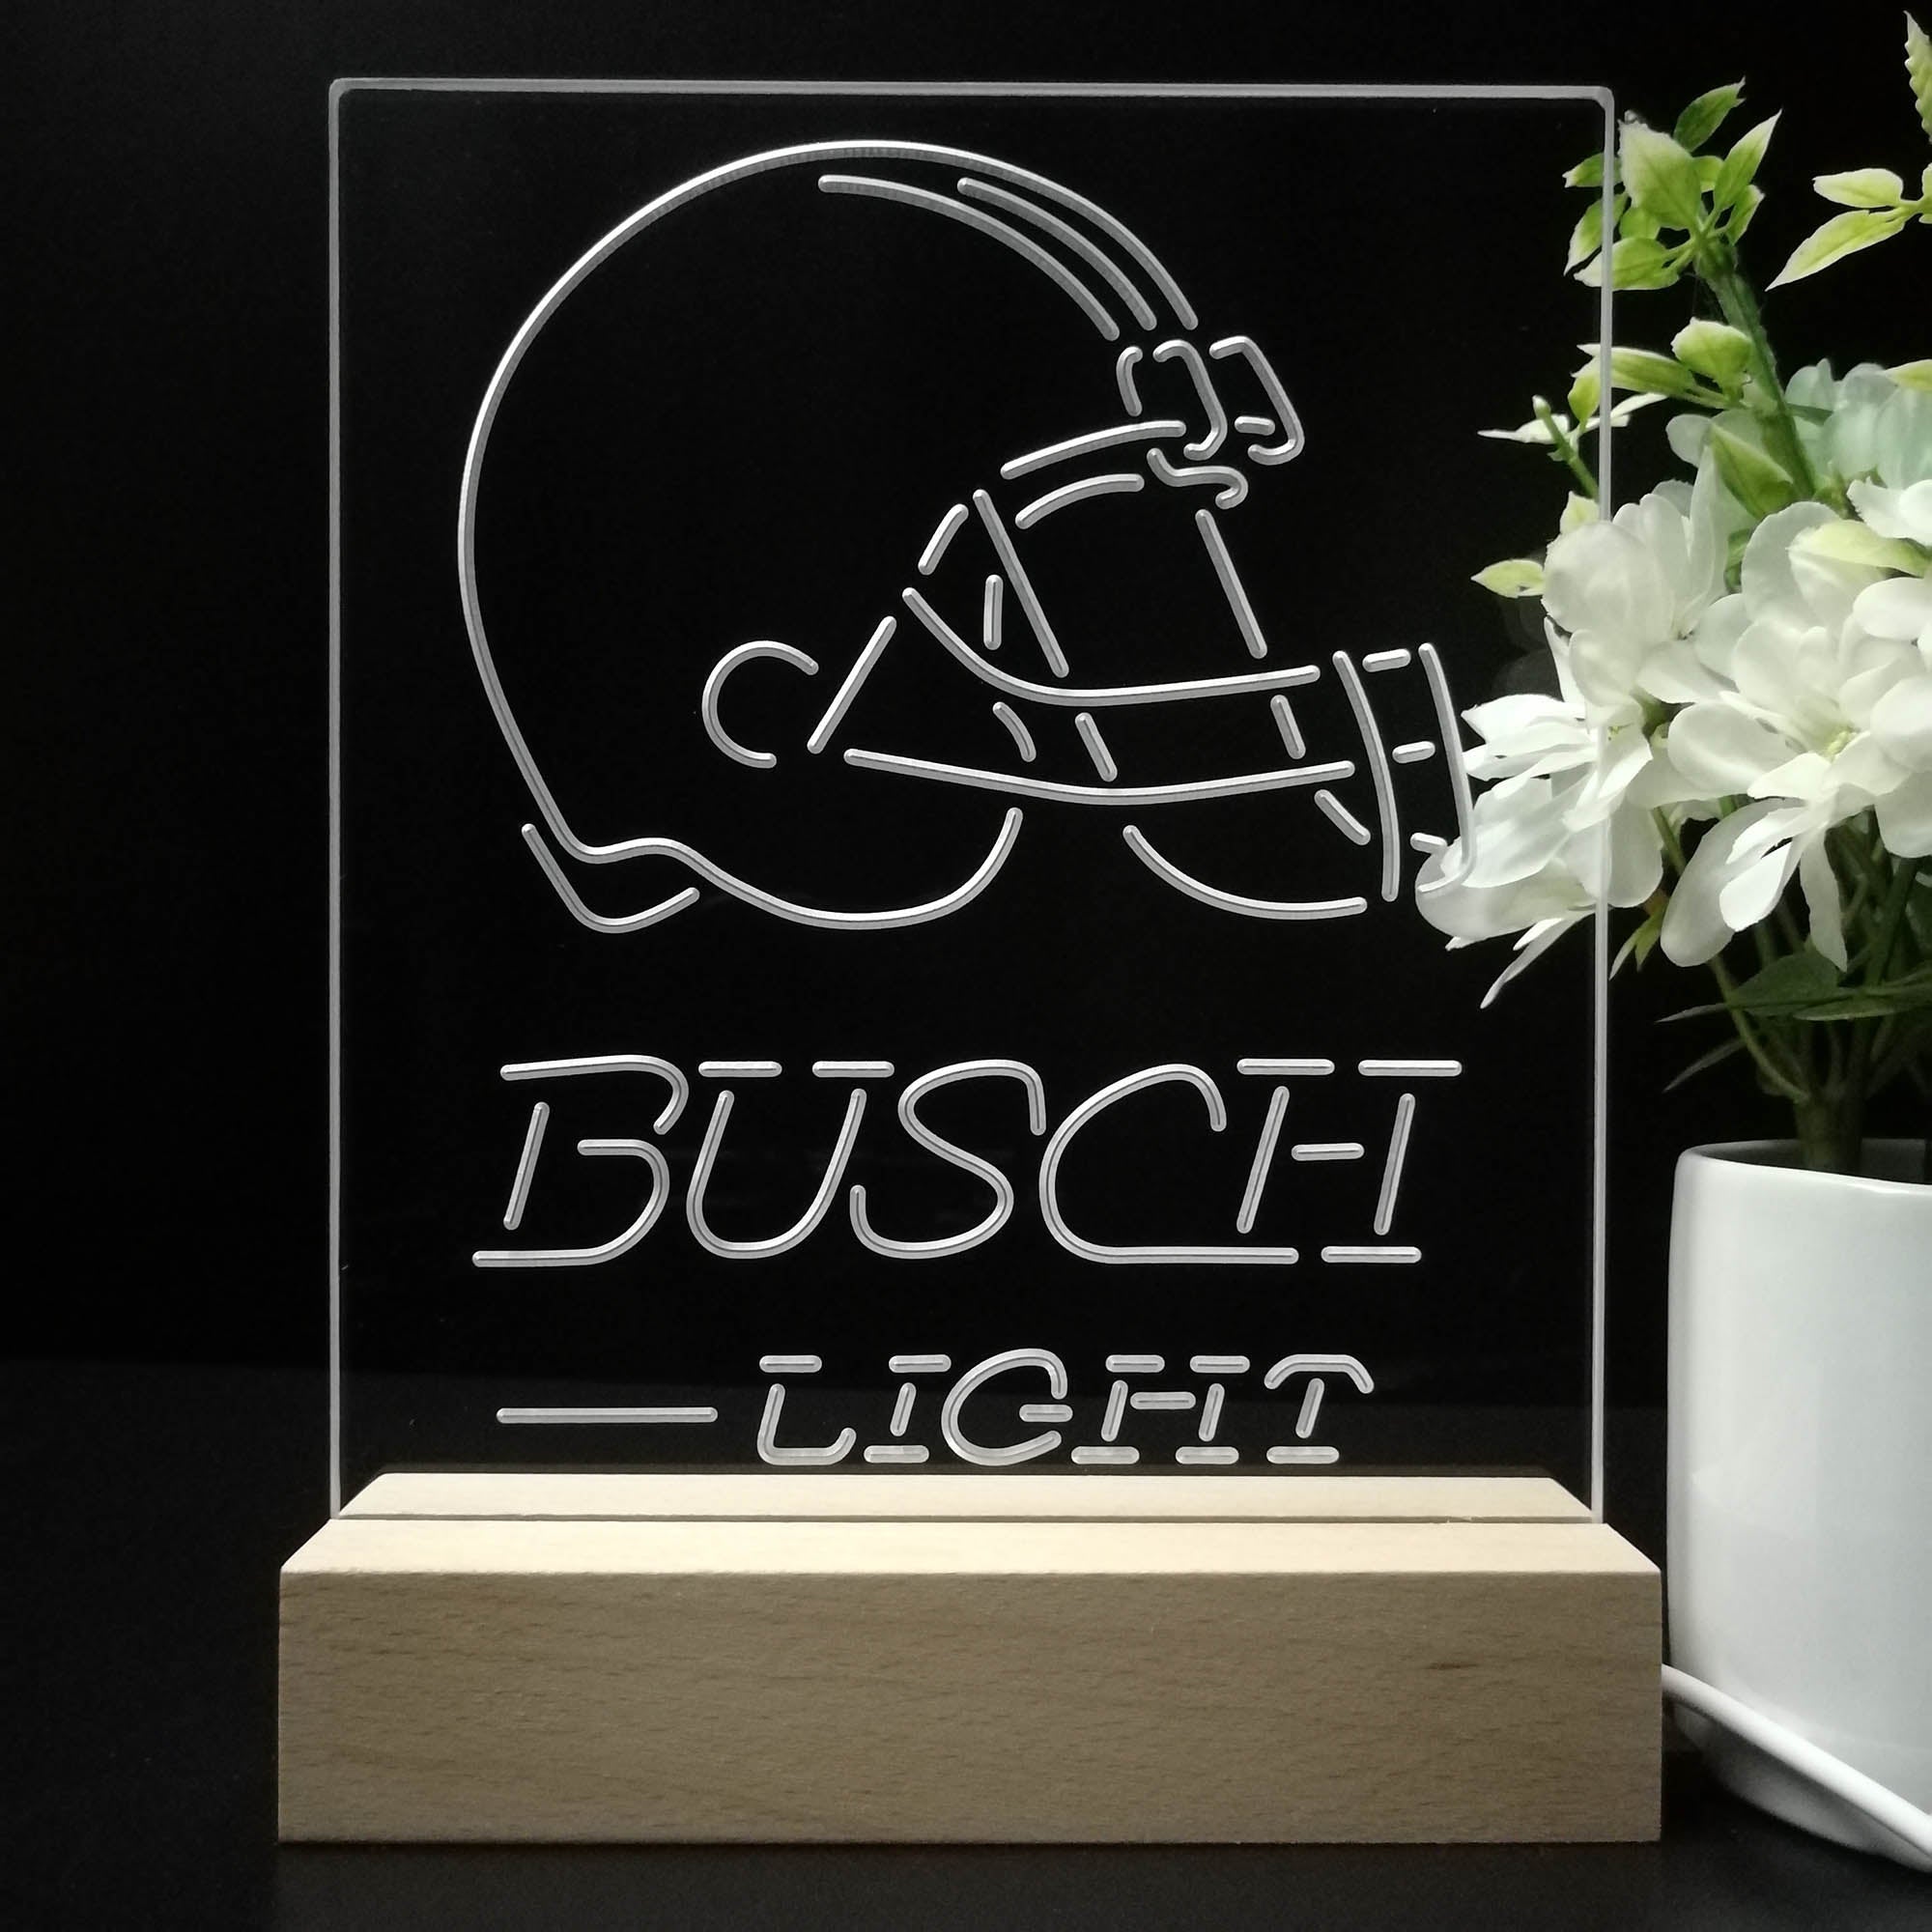 Cleveland Browns Busch Light 3D LED Optical Illusion Sport Team Night Light